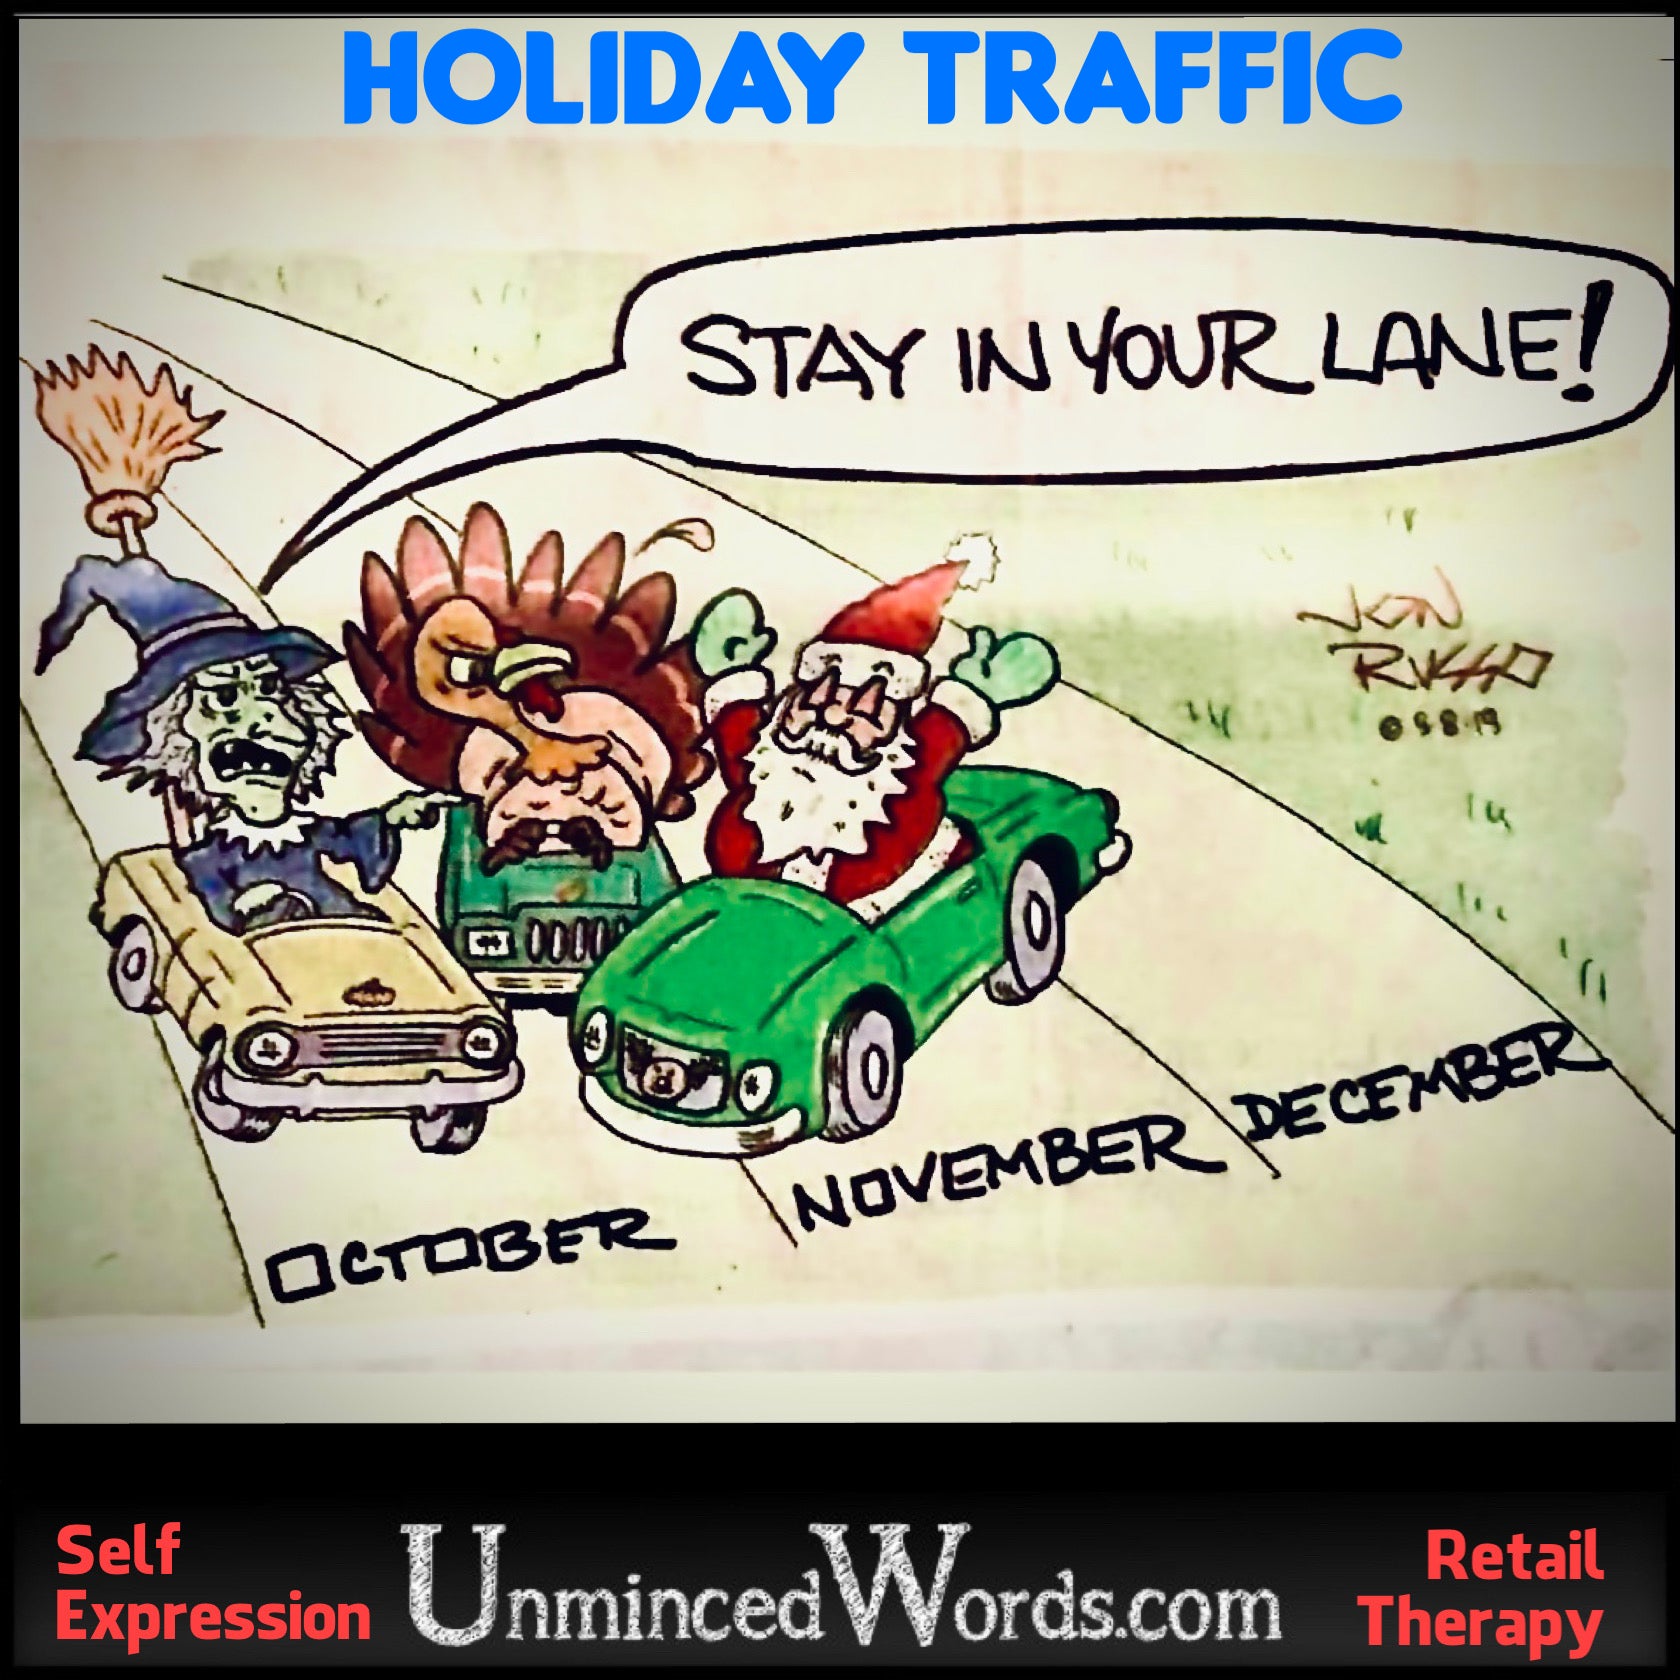 Stay in your lane, Santa!